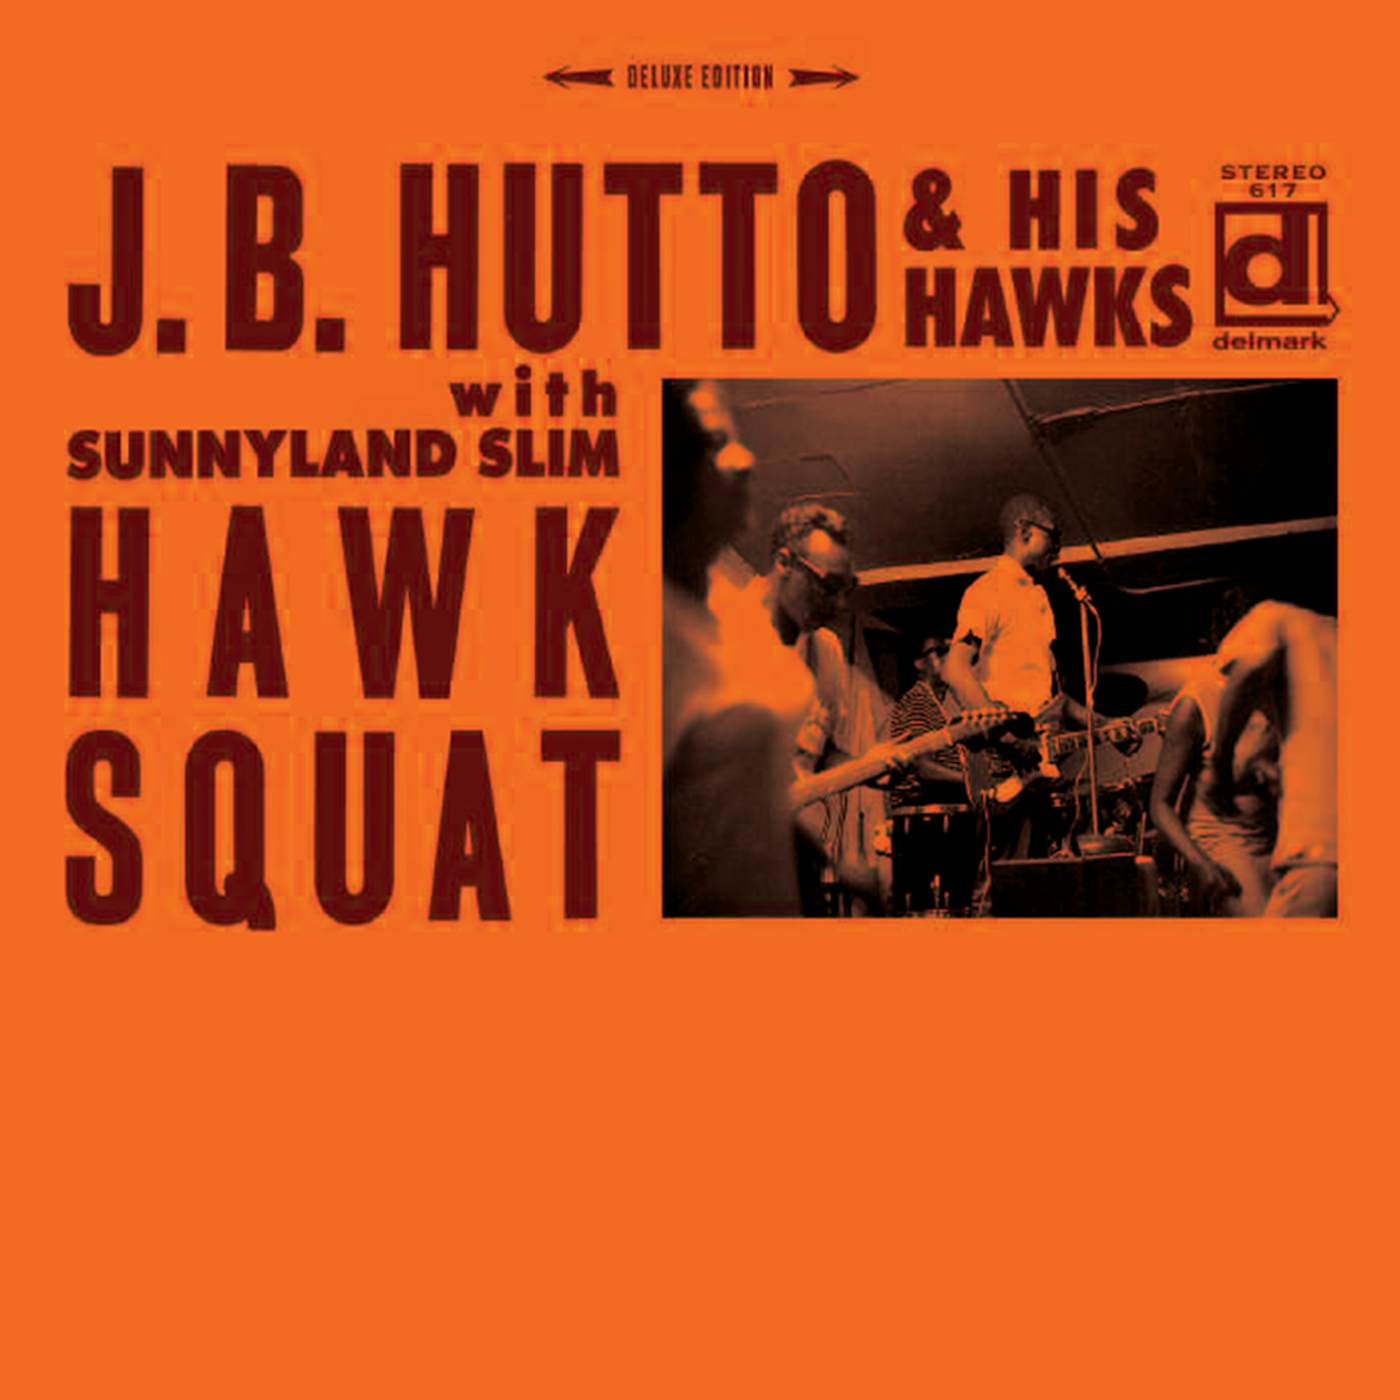 J. B. Hutto Hawk Squat CD